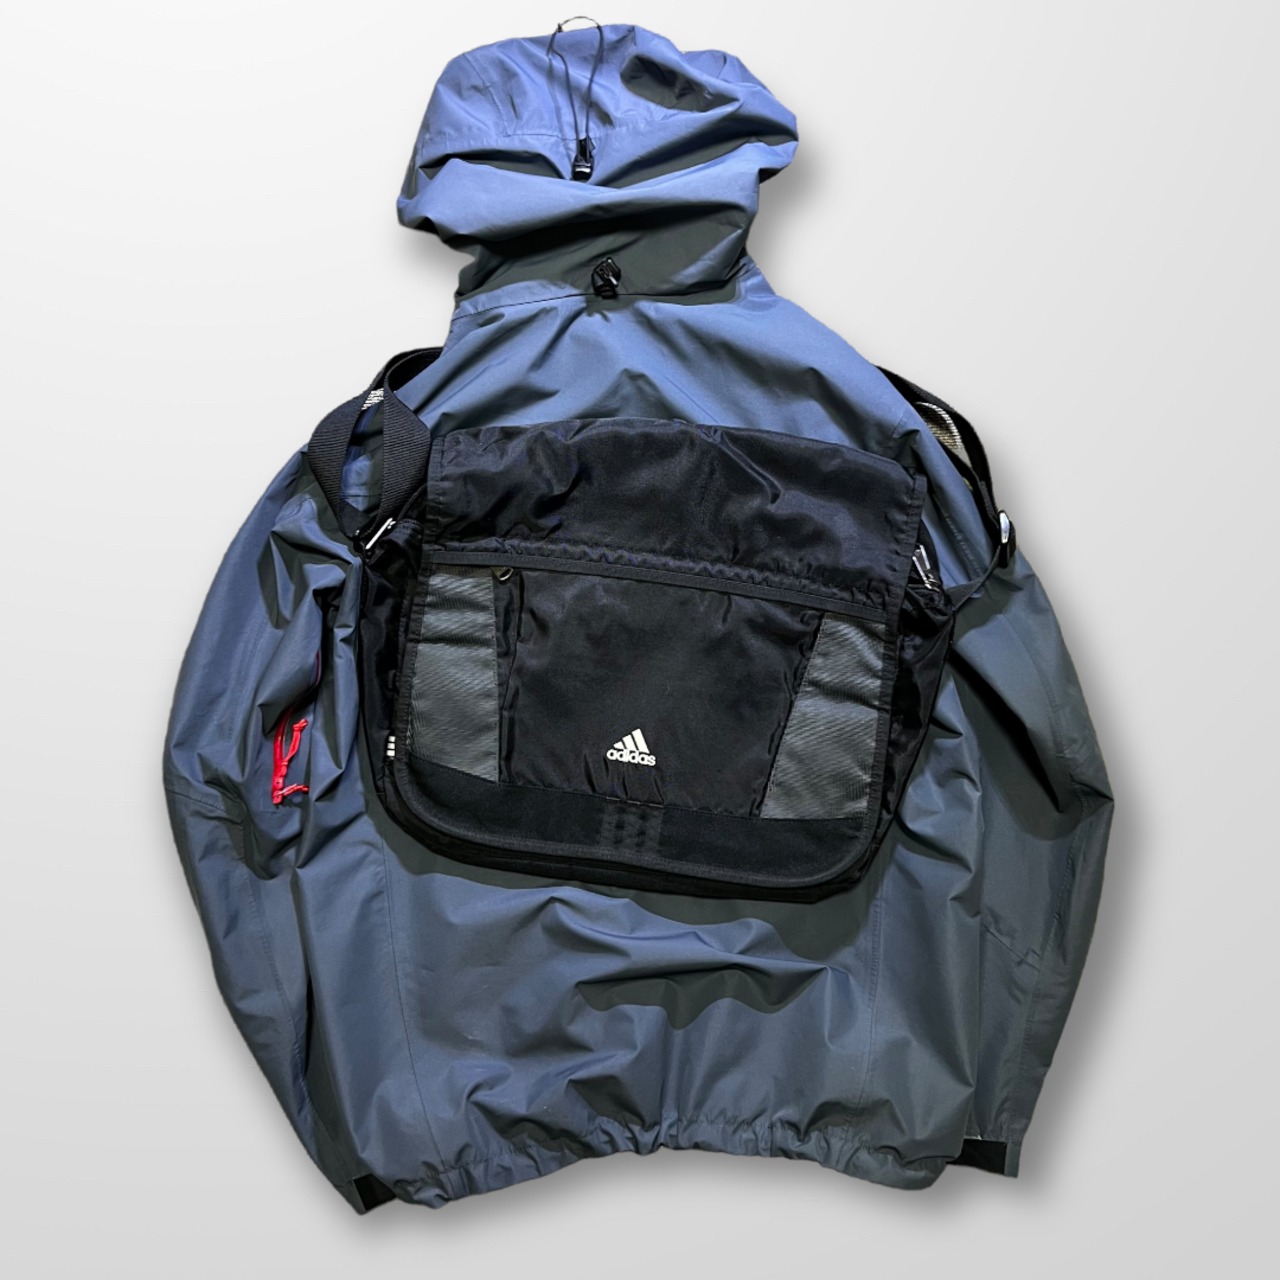 Adidas "DEORON PIECE" Messenger Bag